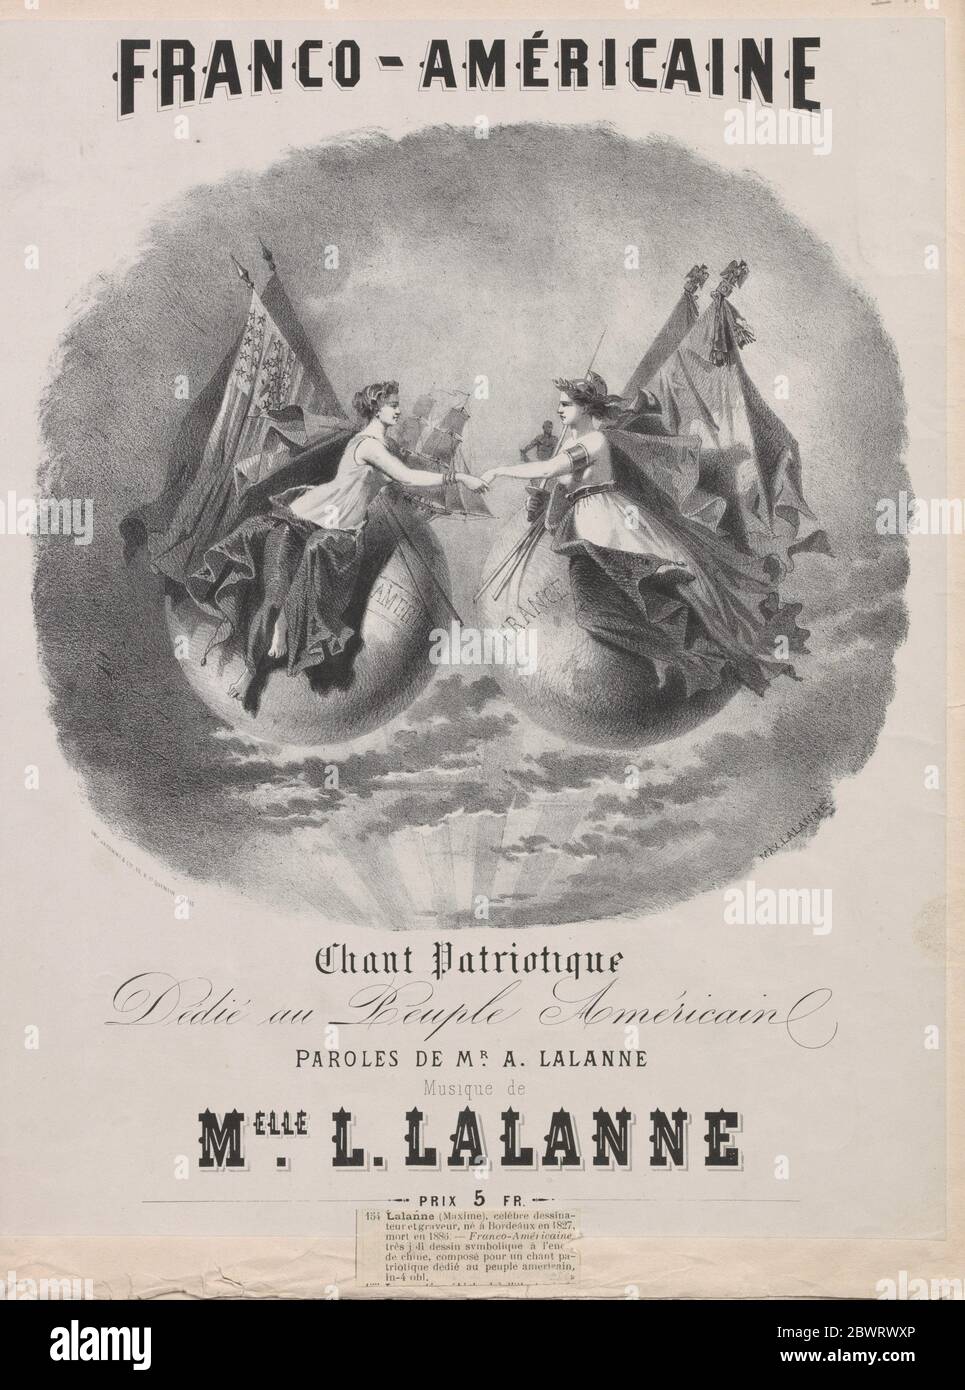 Franco-américaine : chant patriotique. Avery, Samuel Putnam, 1822-1904 (Collector) Lalanne, Maxime (1827-1886) (Artist) Lalanne, Antoine (Lyricist). Stock Photo